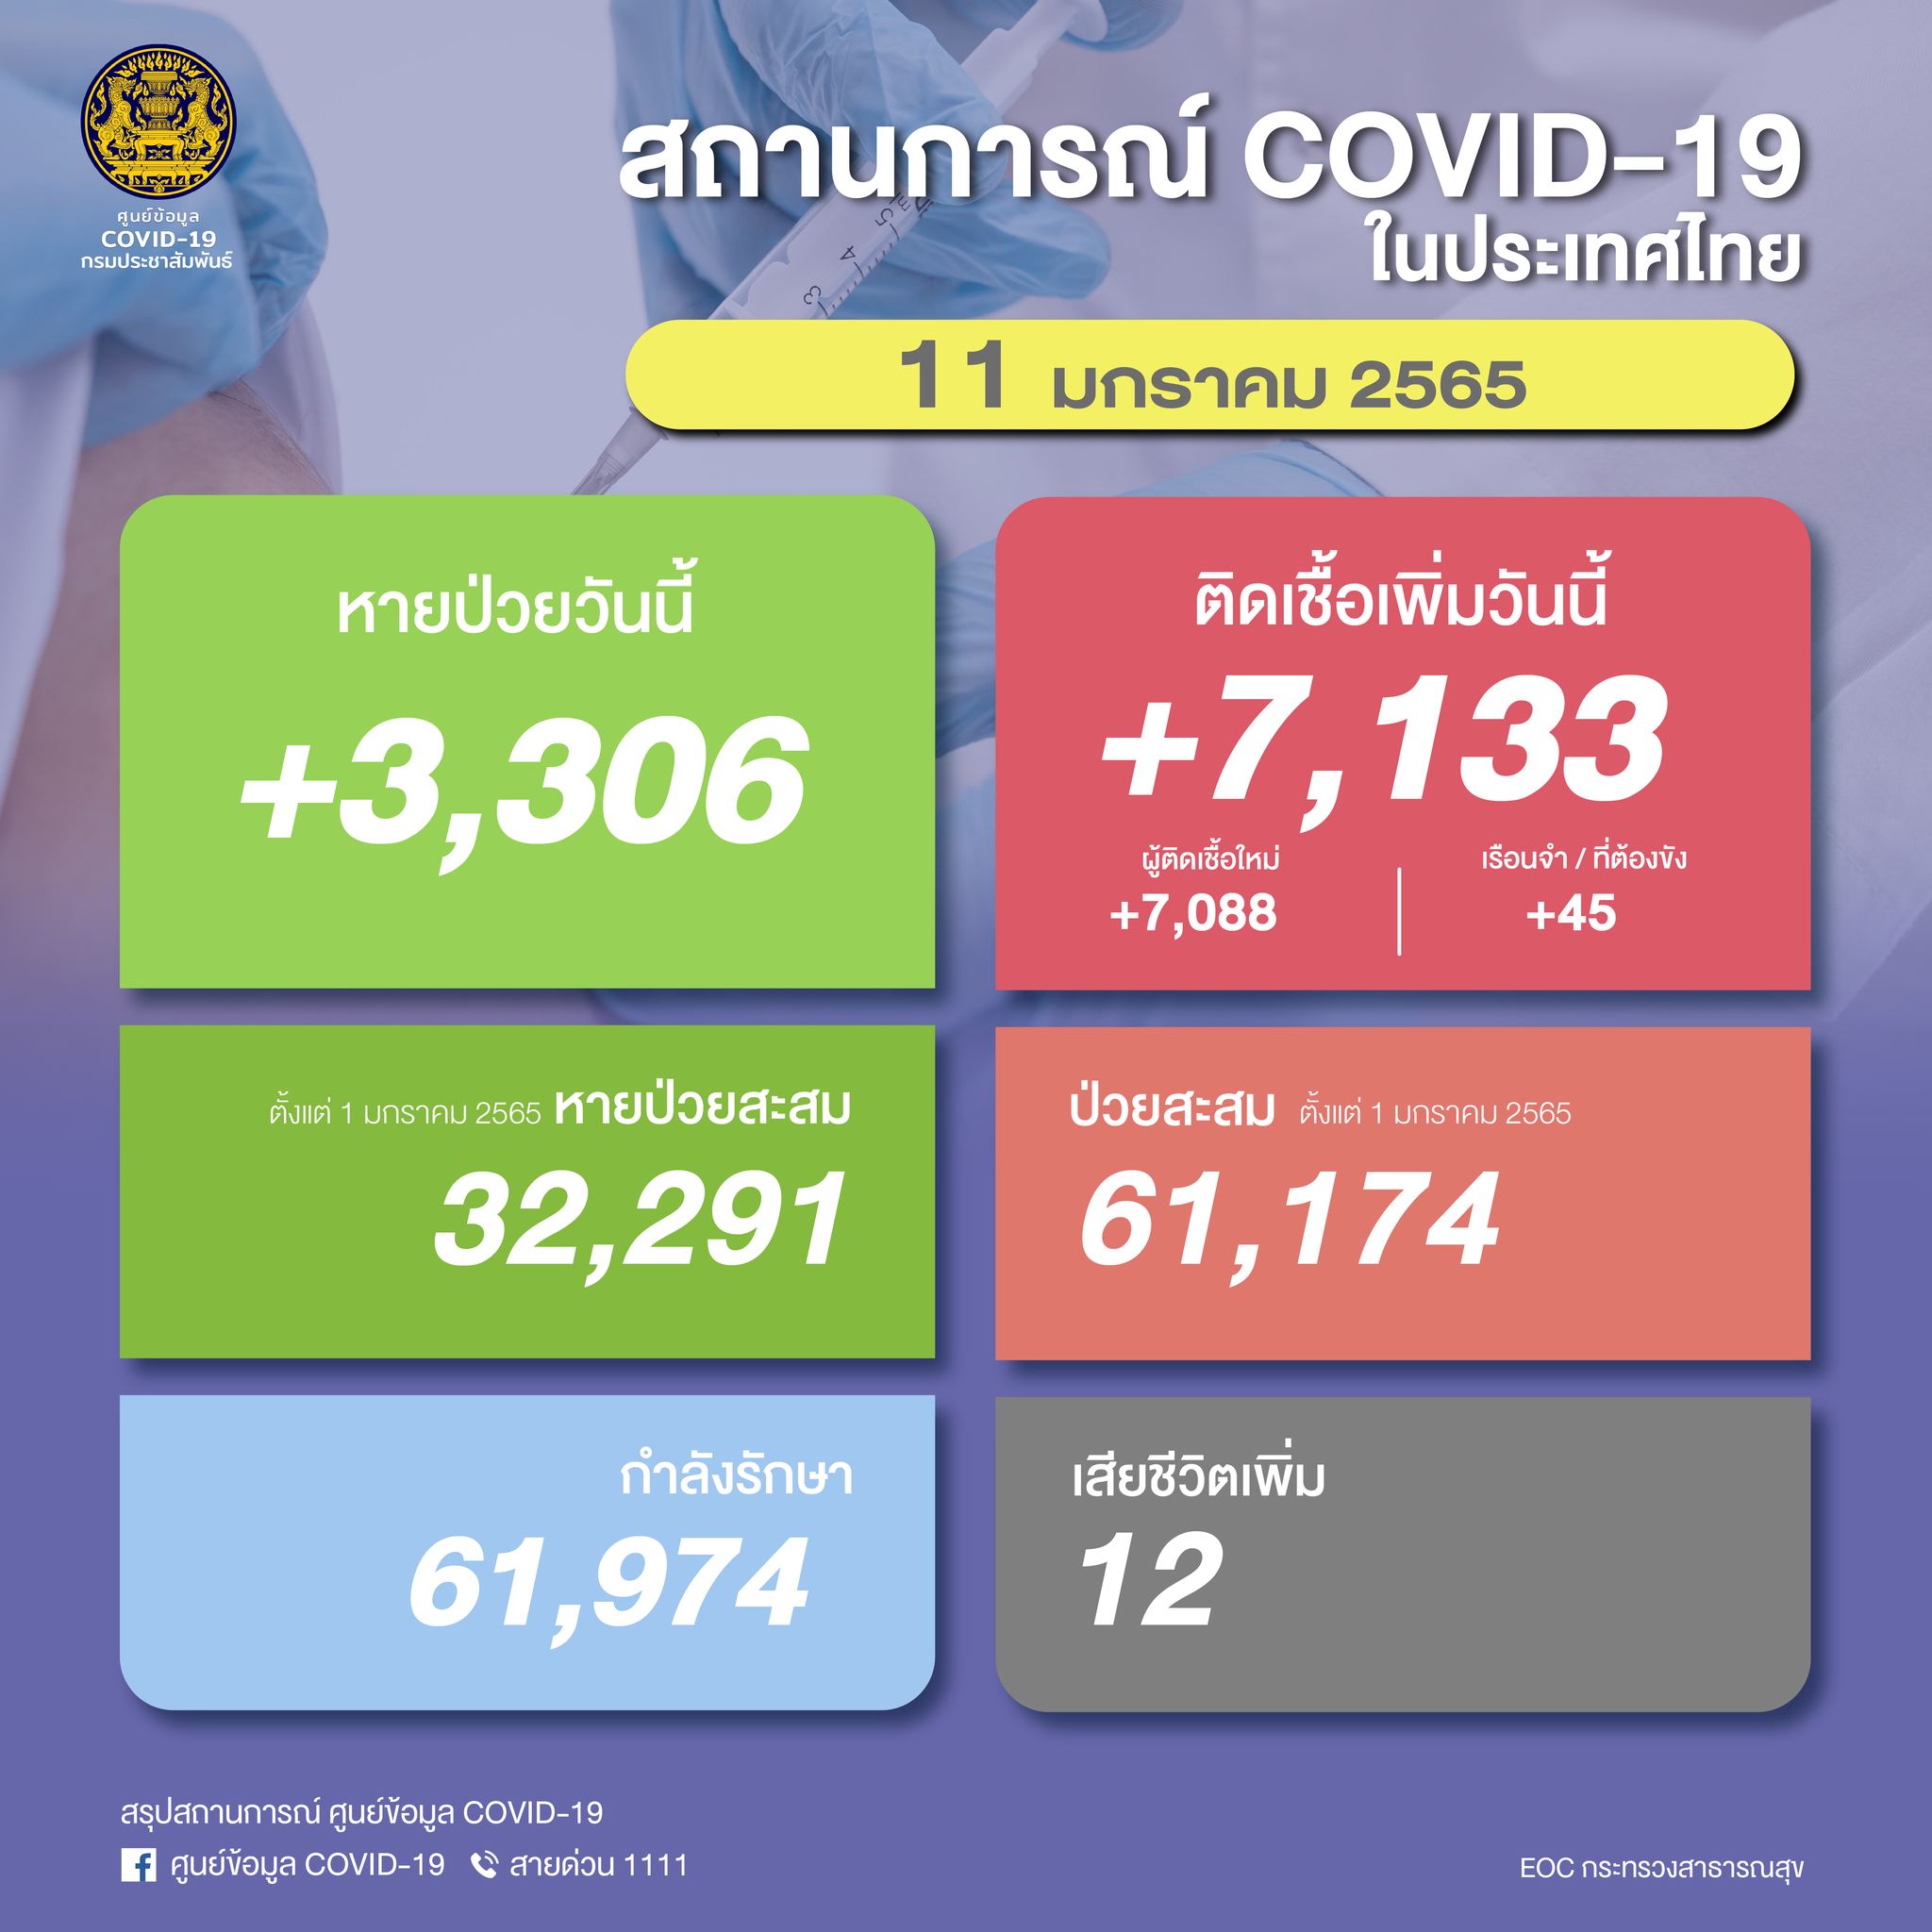 เปิดยอดโควิดในไทย วันนี้พบผู้ติดเชื้อรายใหม่ 7,133 ราย เสียชีวิต 12 ราย